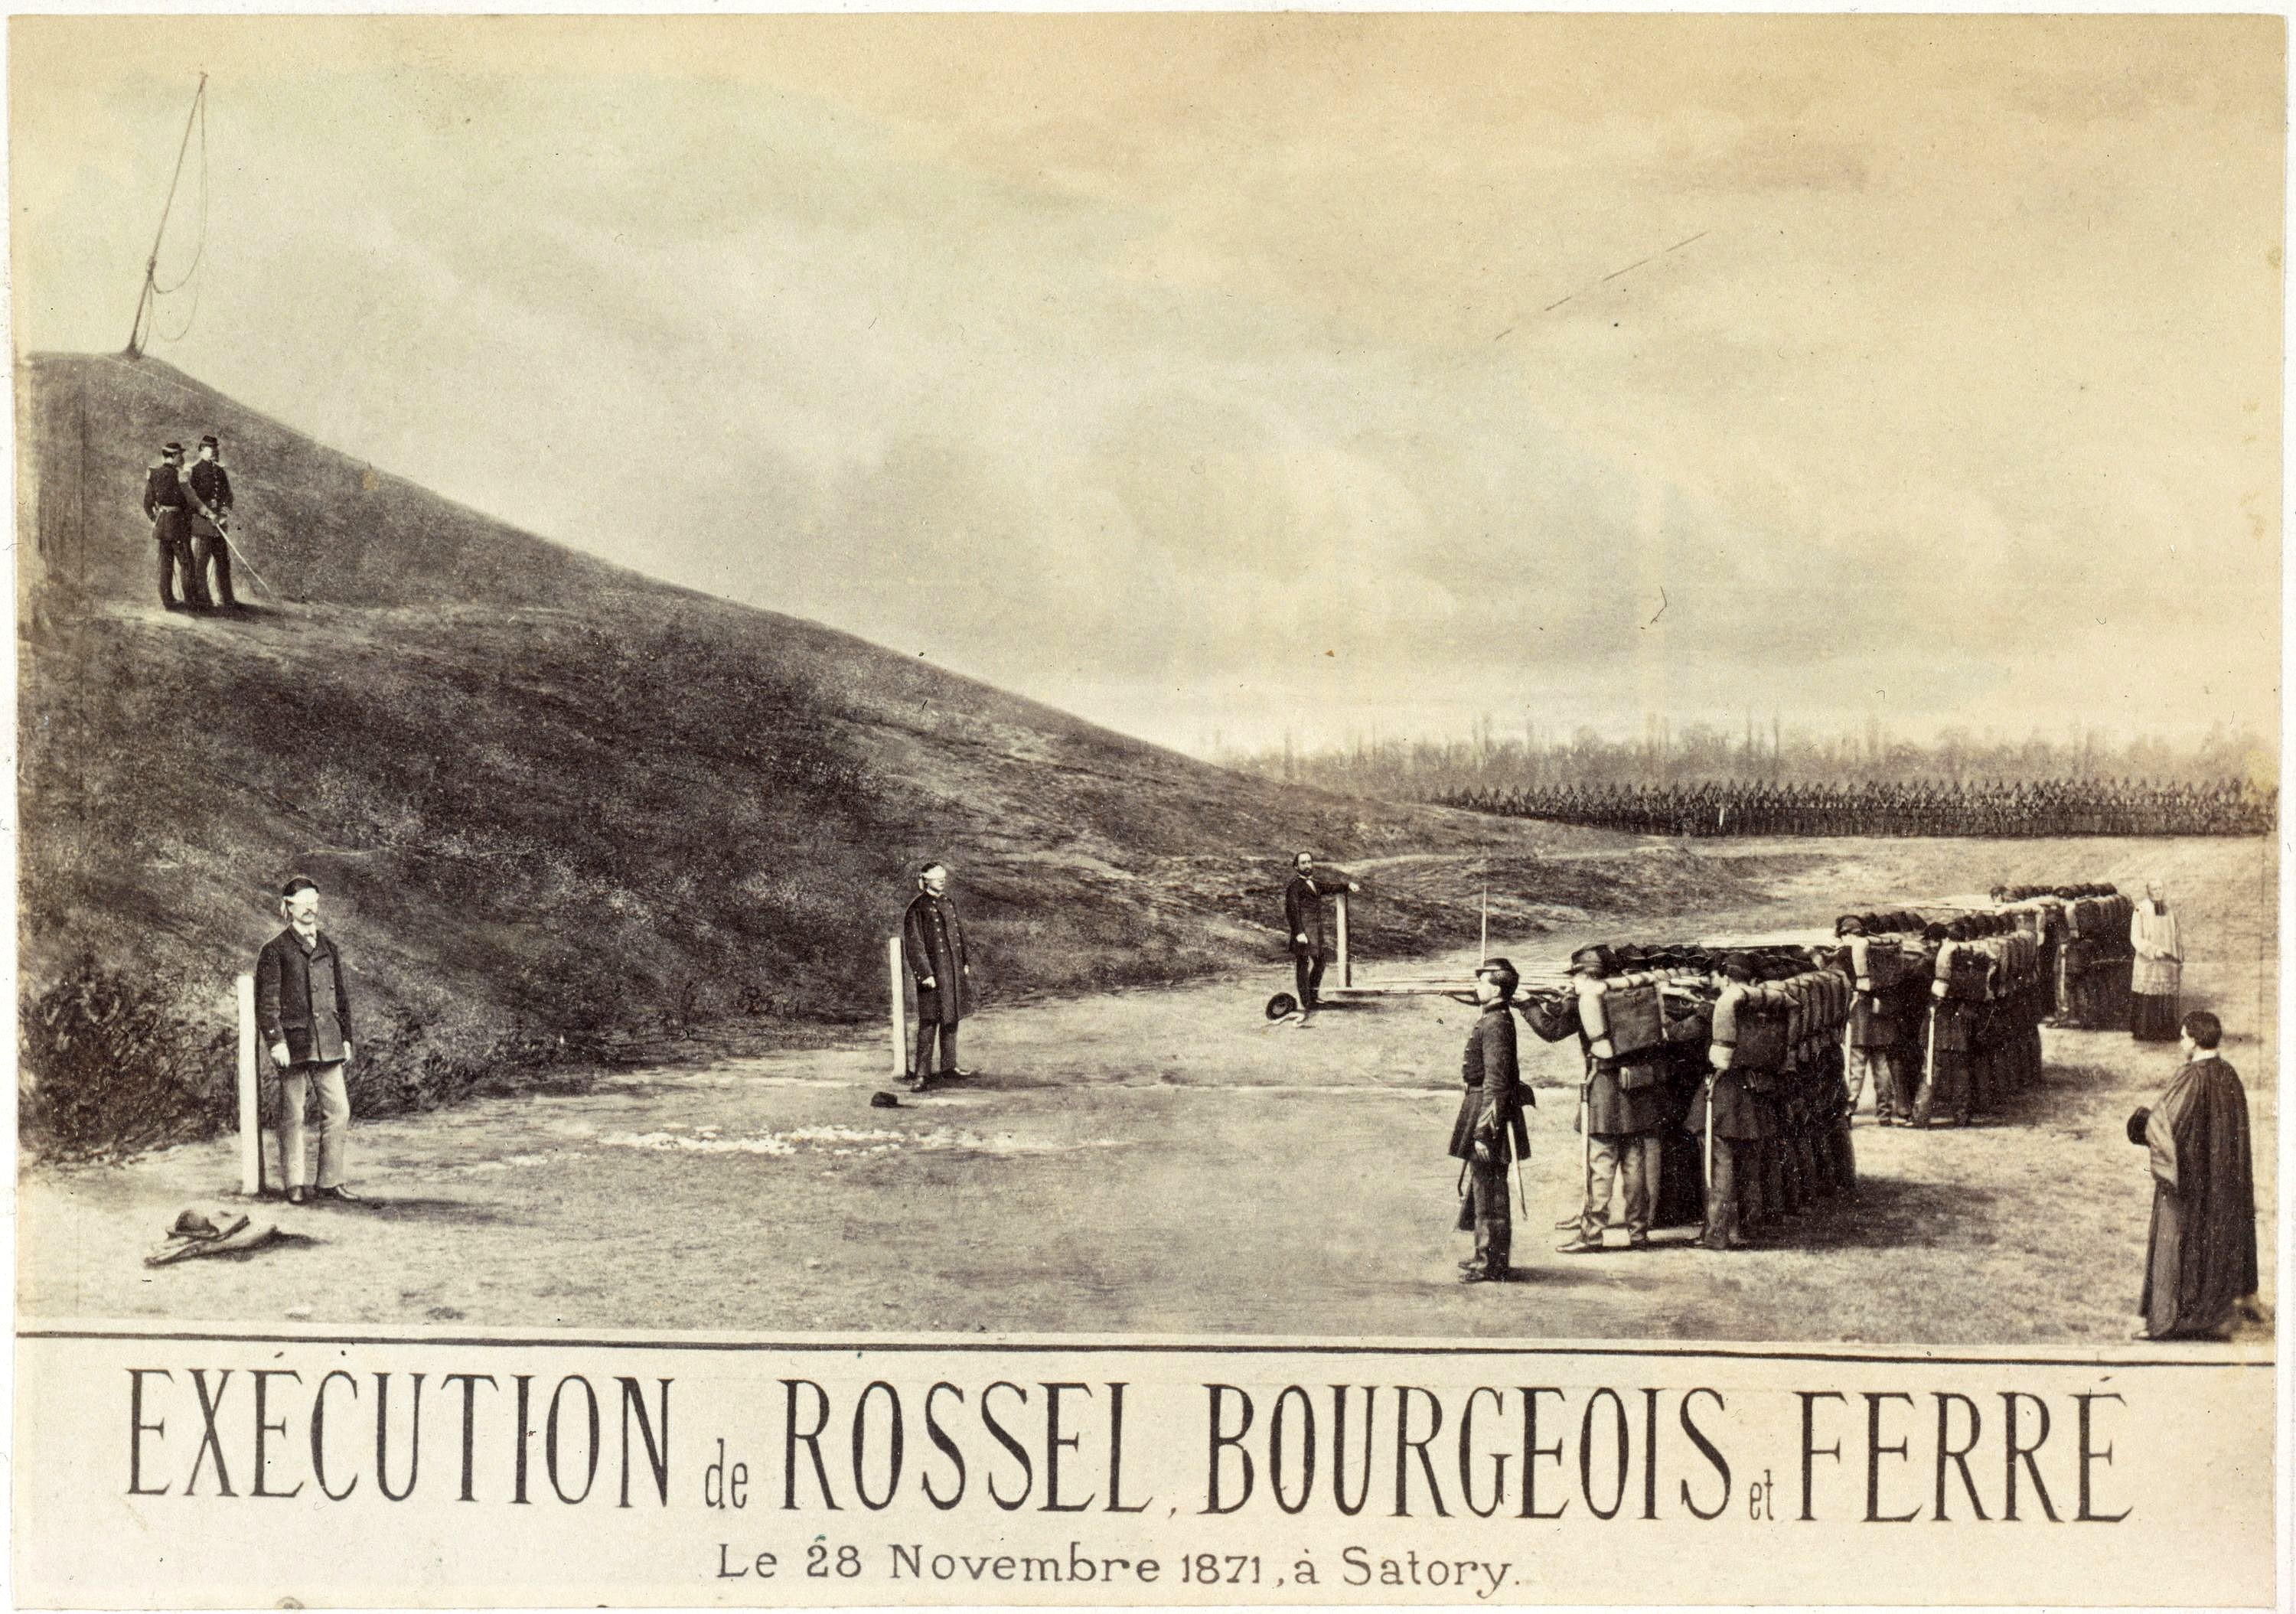 Photomontage de l'exécution de Rossel Bourgeois et Ferré, le 28 novembre 1871 à Satory. (© Musée Carnavalet – Histoire de Paris)